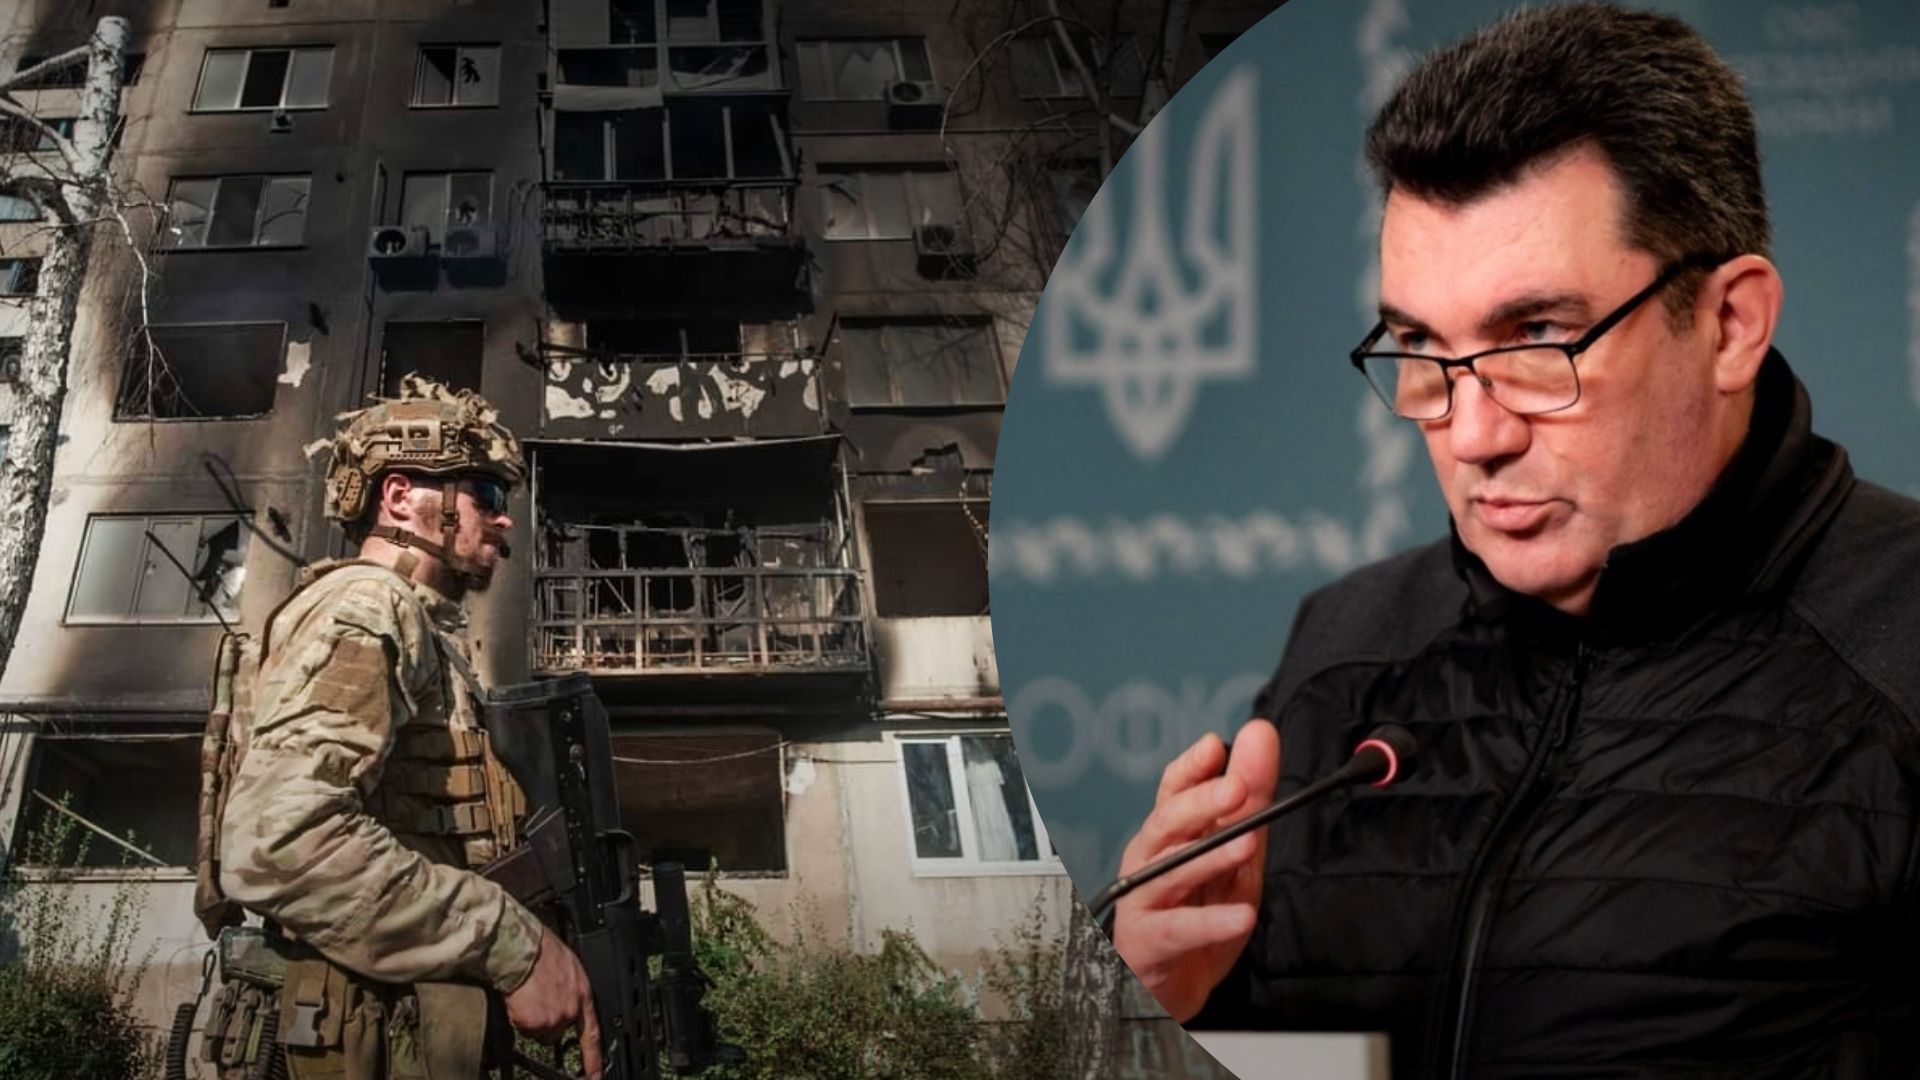 Сколько будет продолжаться война - Данилов озвучил свой прогноз - Новости Украины